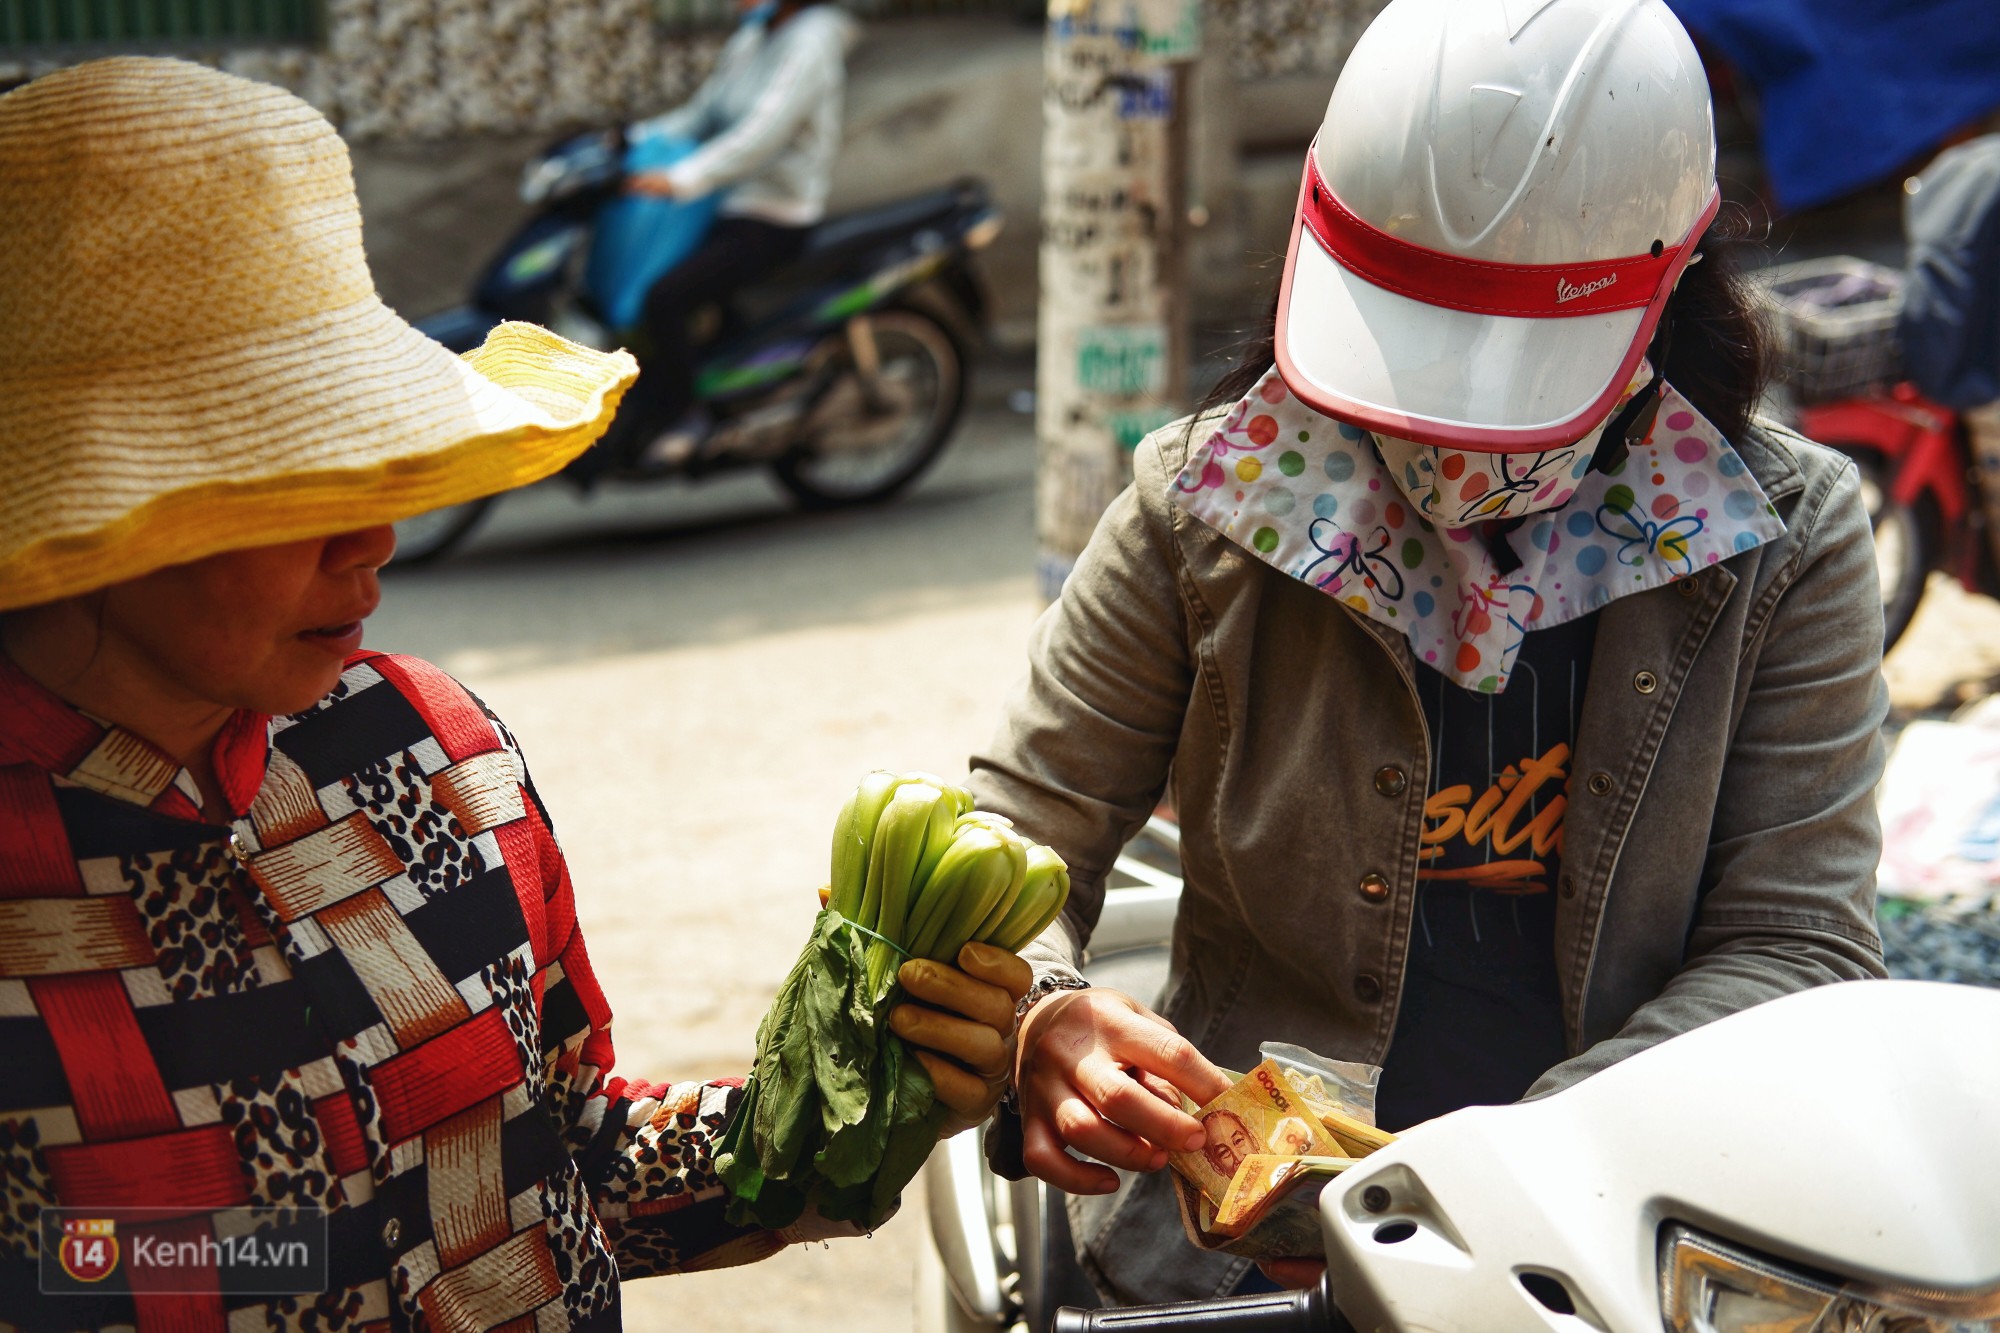 Gặp cô bán rau vui tính ở Sài Gòn với tấm bảng không bán túi nilon: Nhiều khách bảo cô làm trò xàm xí! - Ảnh 5.